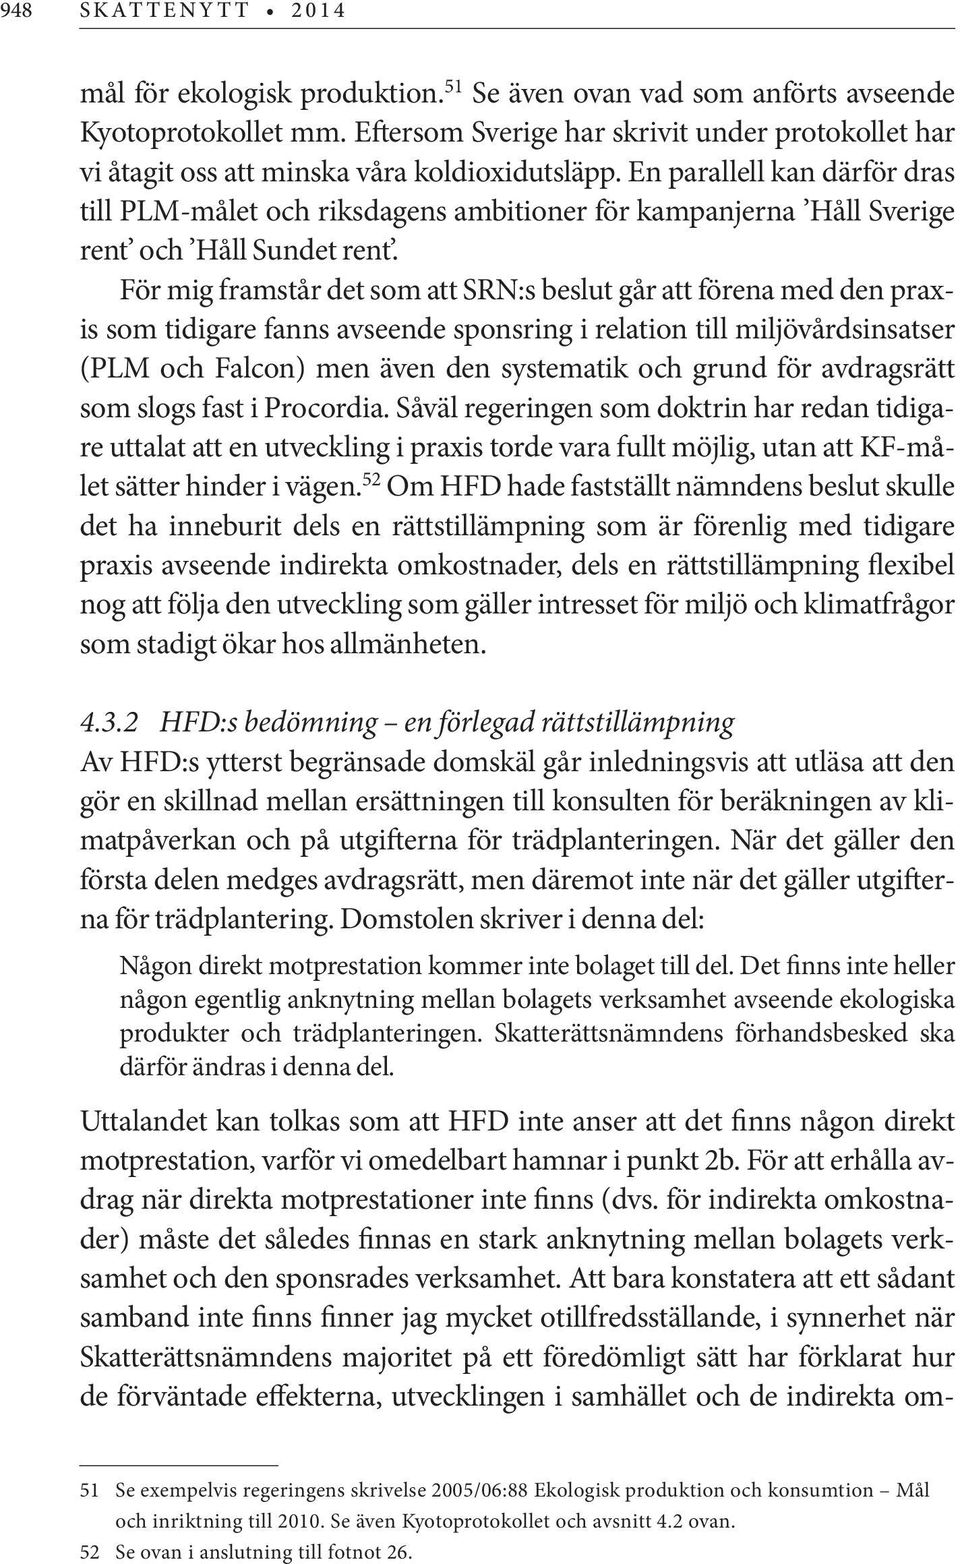 En parallell kan därför dras till PLM-målet och riksdagens ambitioner för kampanjerna Håll Sverige rent och Håll Sundet rent.